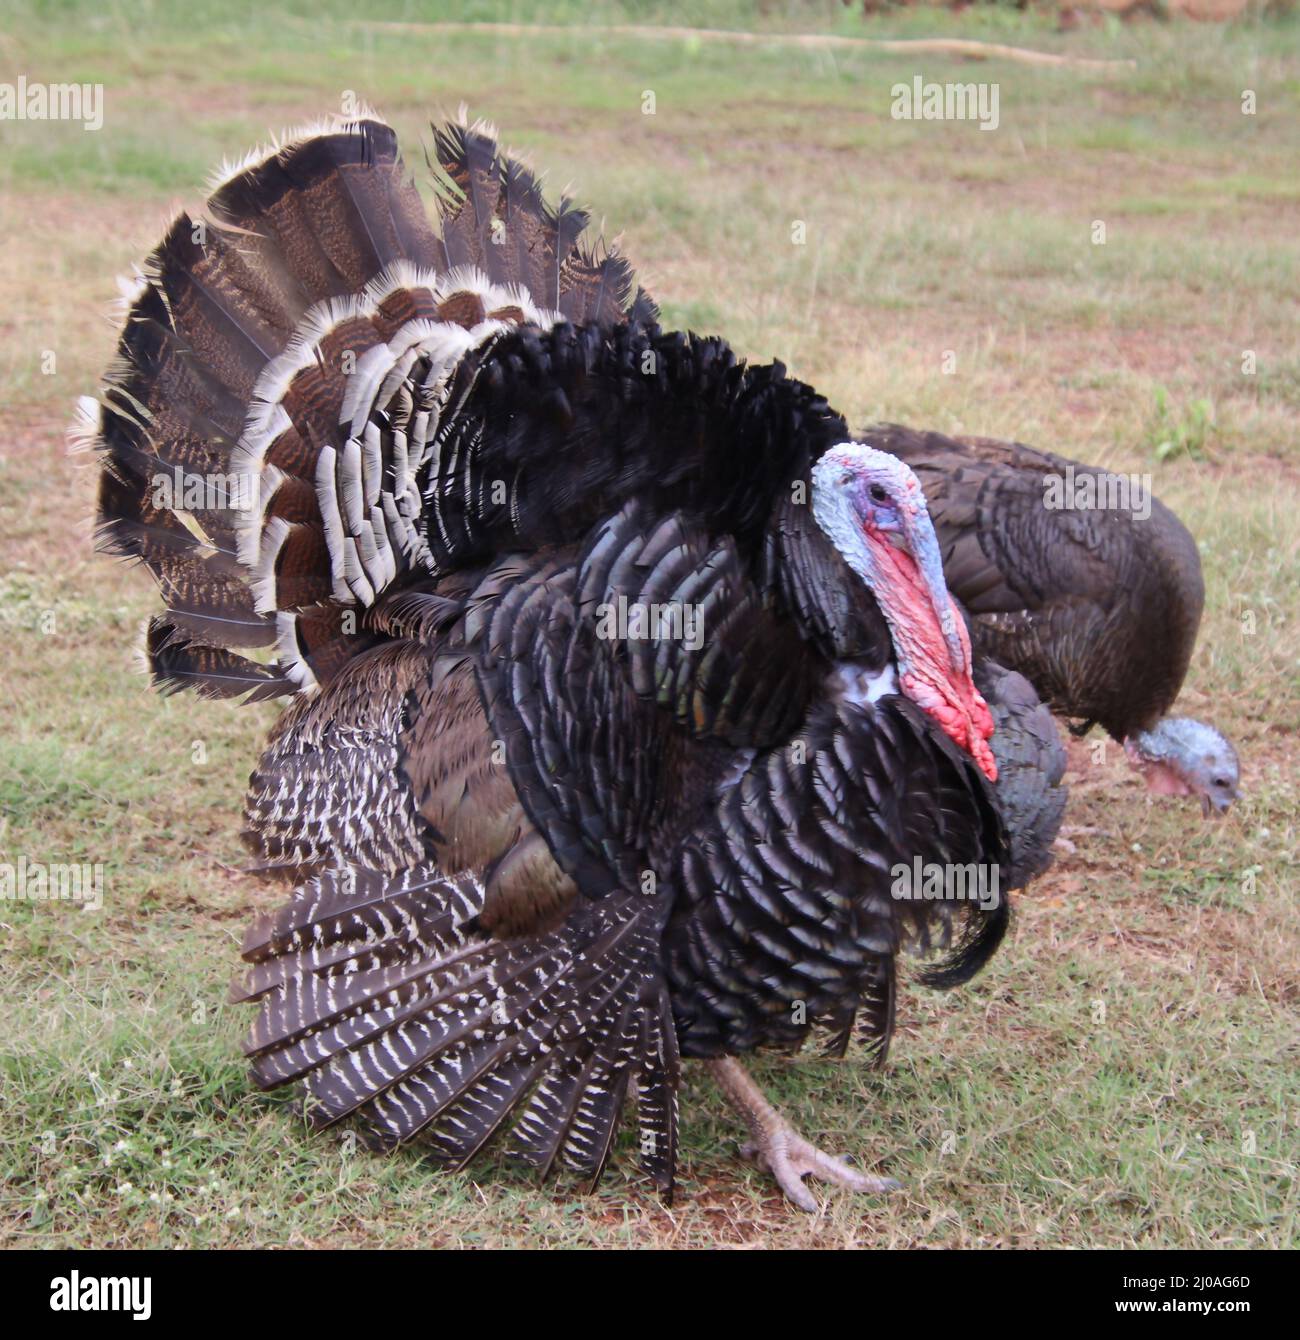 turkey bird running Stock Photo